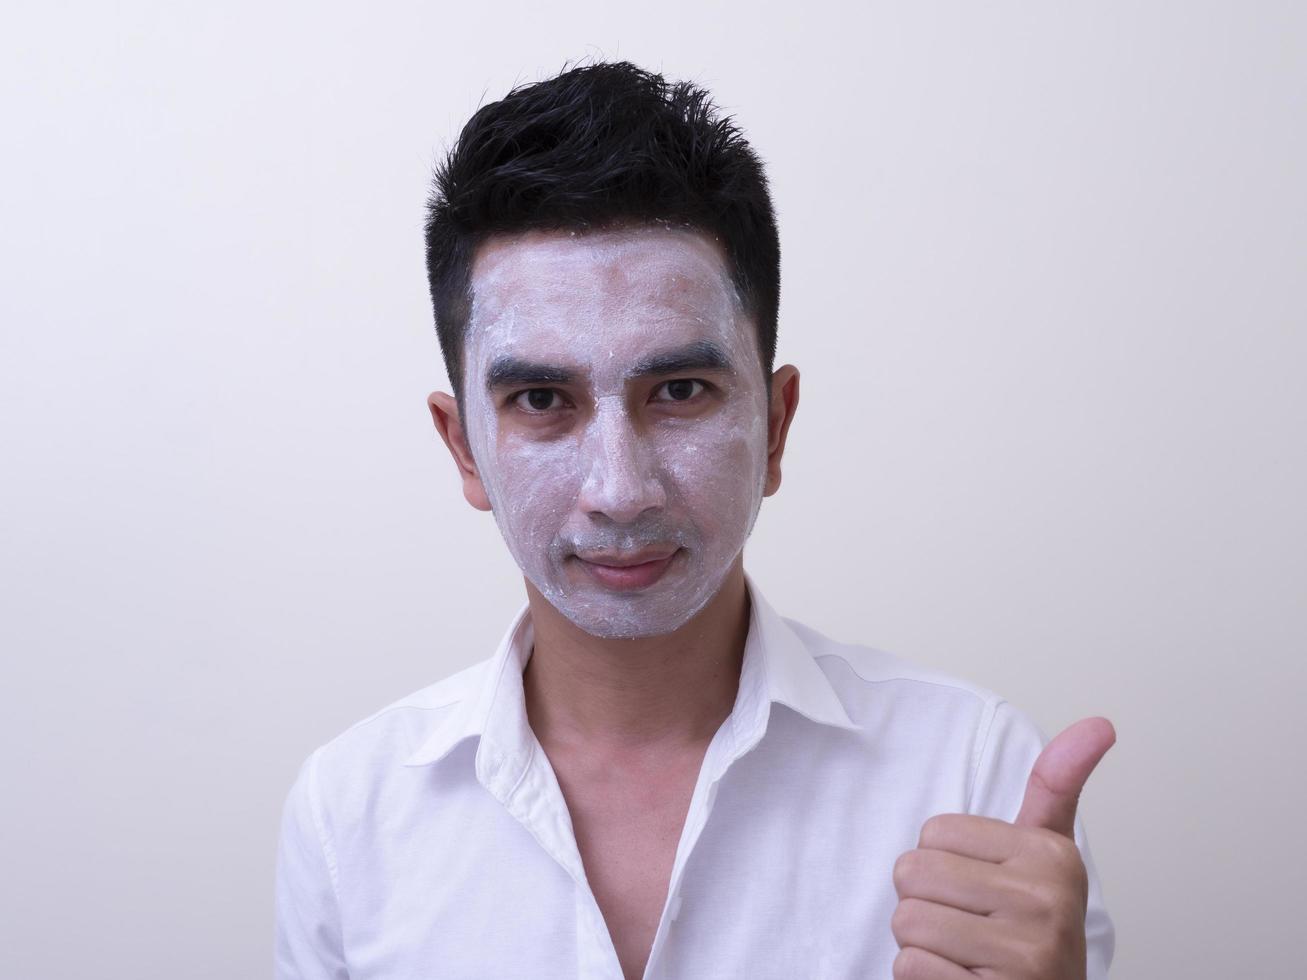 Aziatische knappe jongeman die crème op zijn gezicht aanbrengt met smileygezicht, huidverzorgingsconcept foto